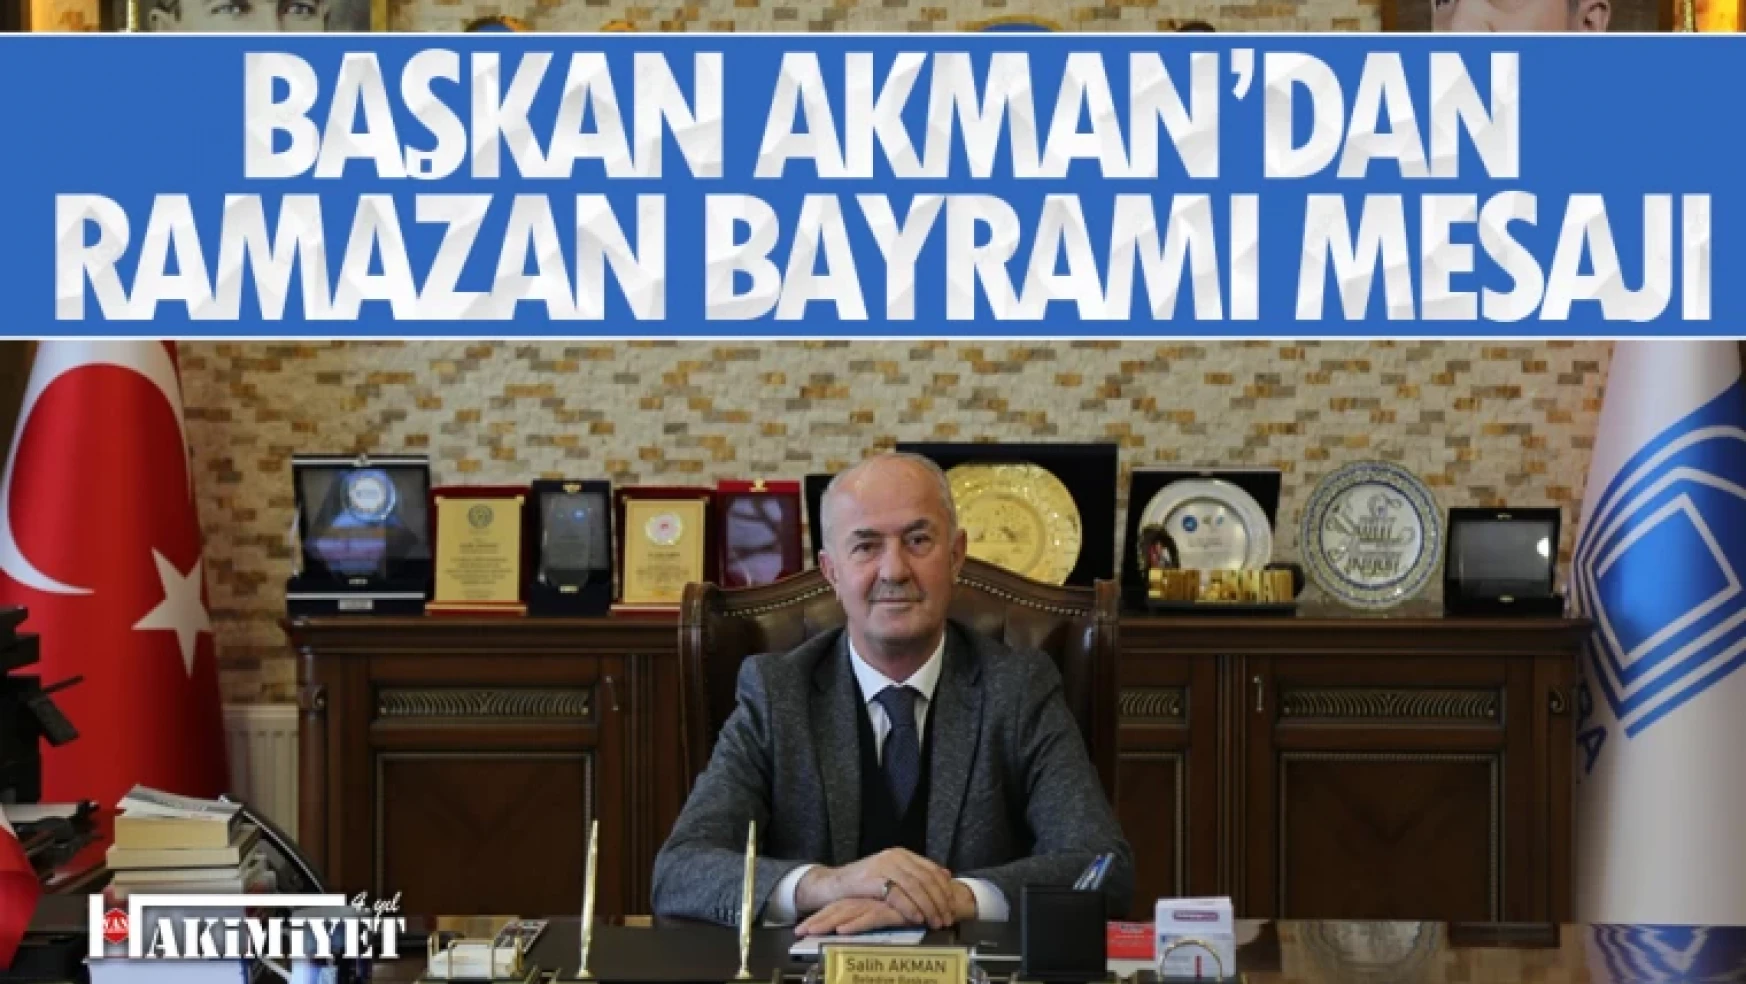 Tuşba Belediye Başkanı Akman'dan 'Ramazan Bayramı' mesajı